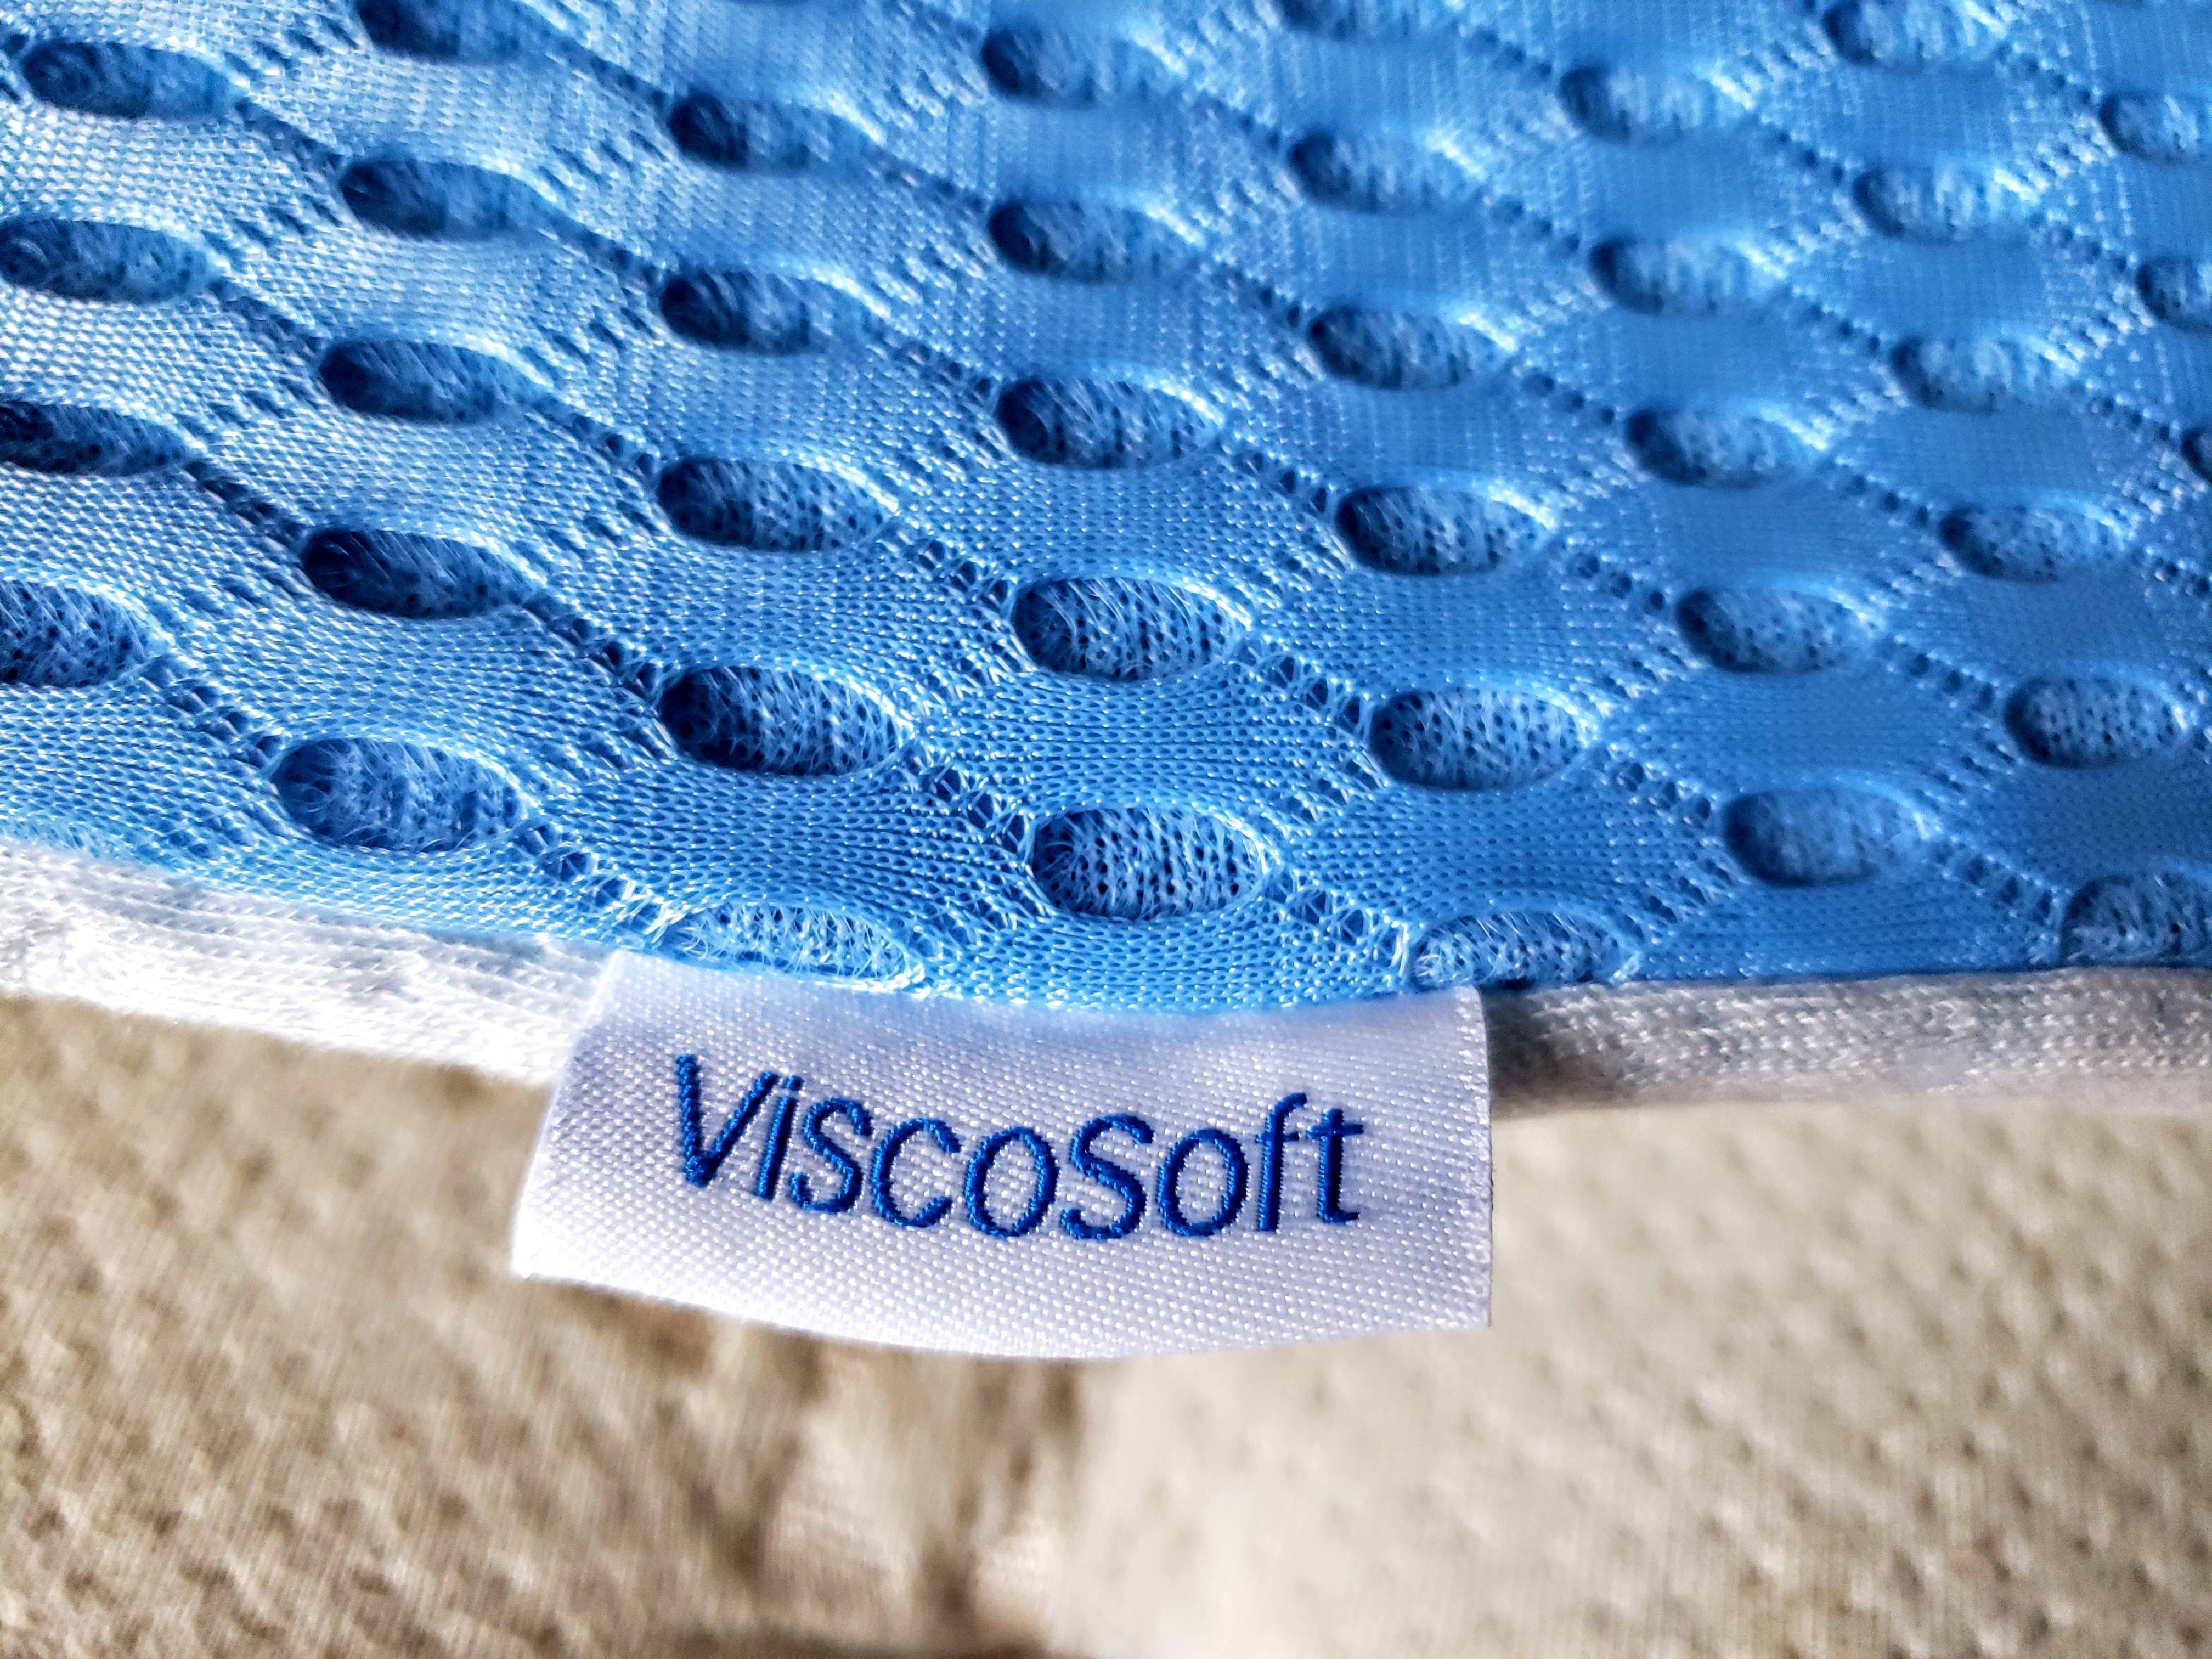 viscosoft high density mattress topper